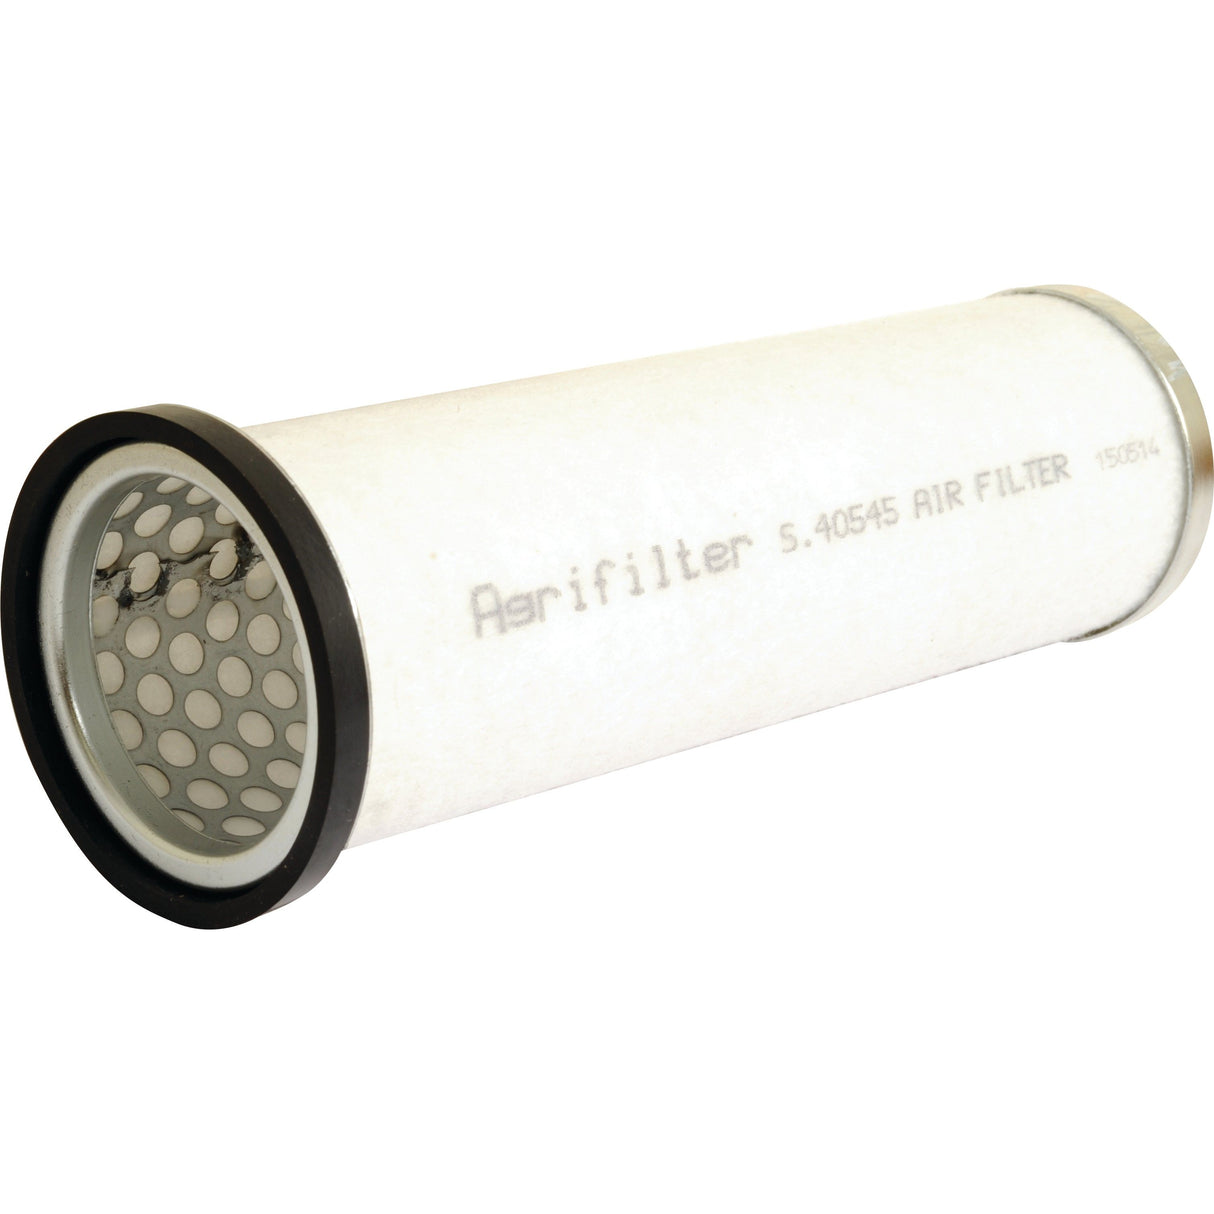 Air Filter - Inner -
 - S.40545 - Farming Parts